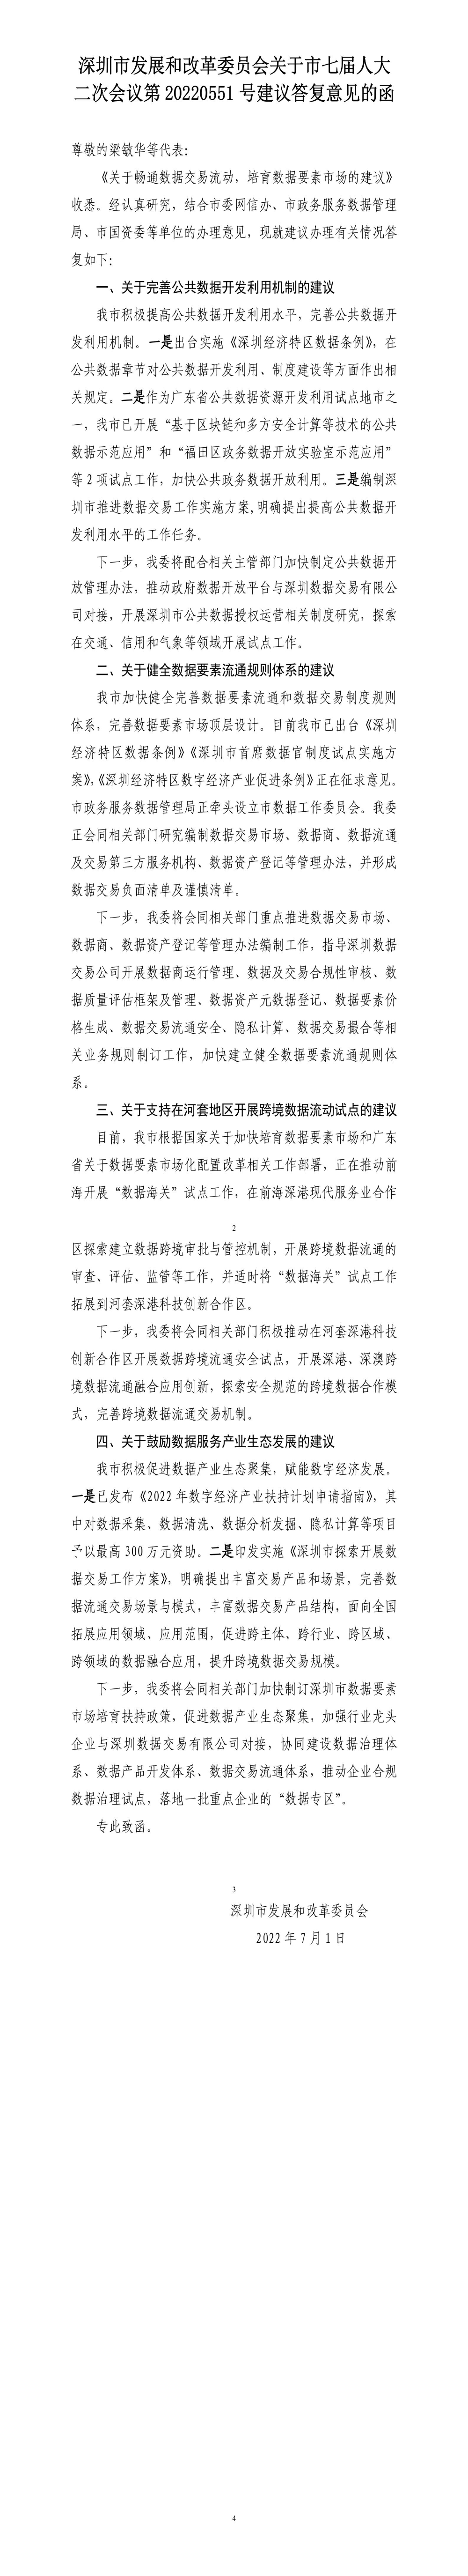 深圳市发展和改革委员会关于市七届人大二次会议第20220551号建议答复意见的函.jpg